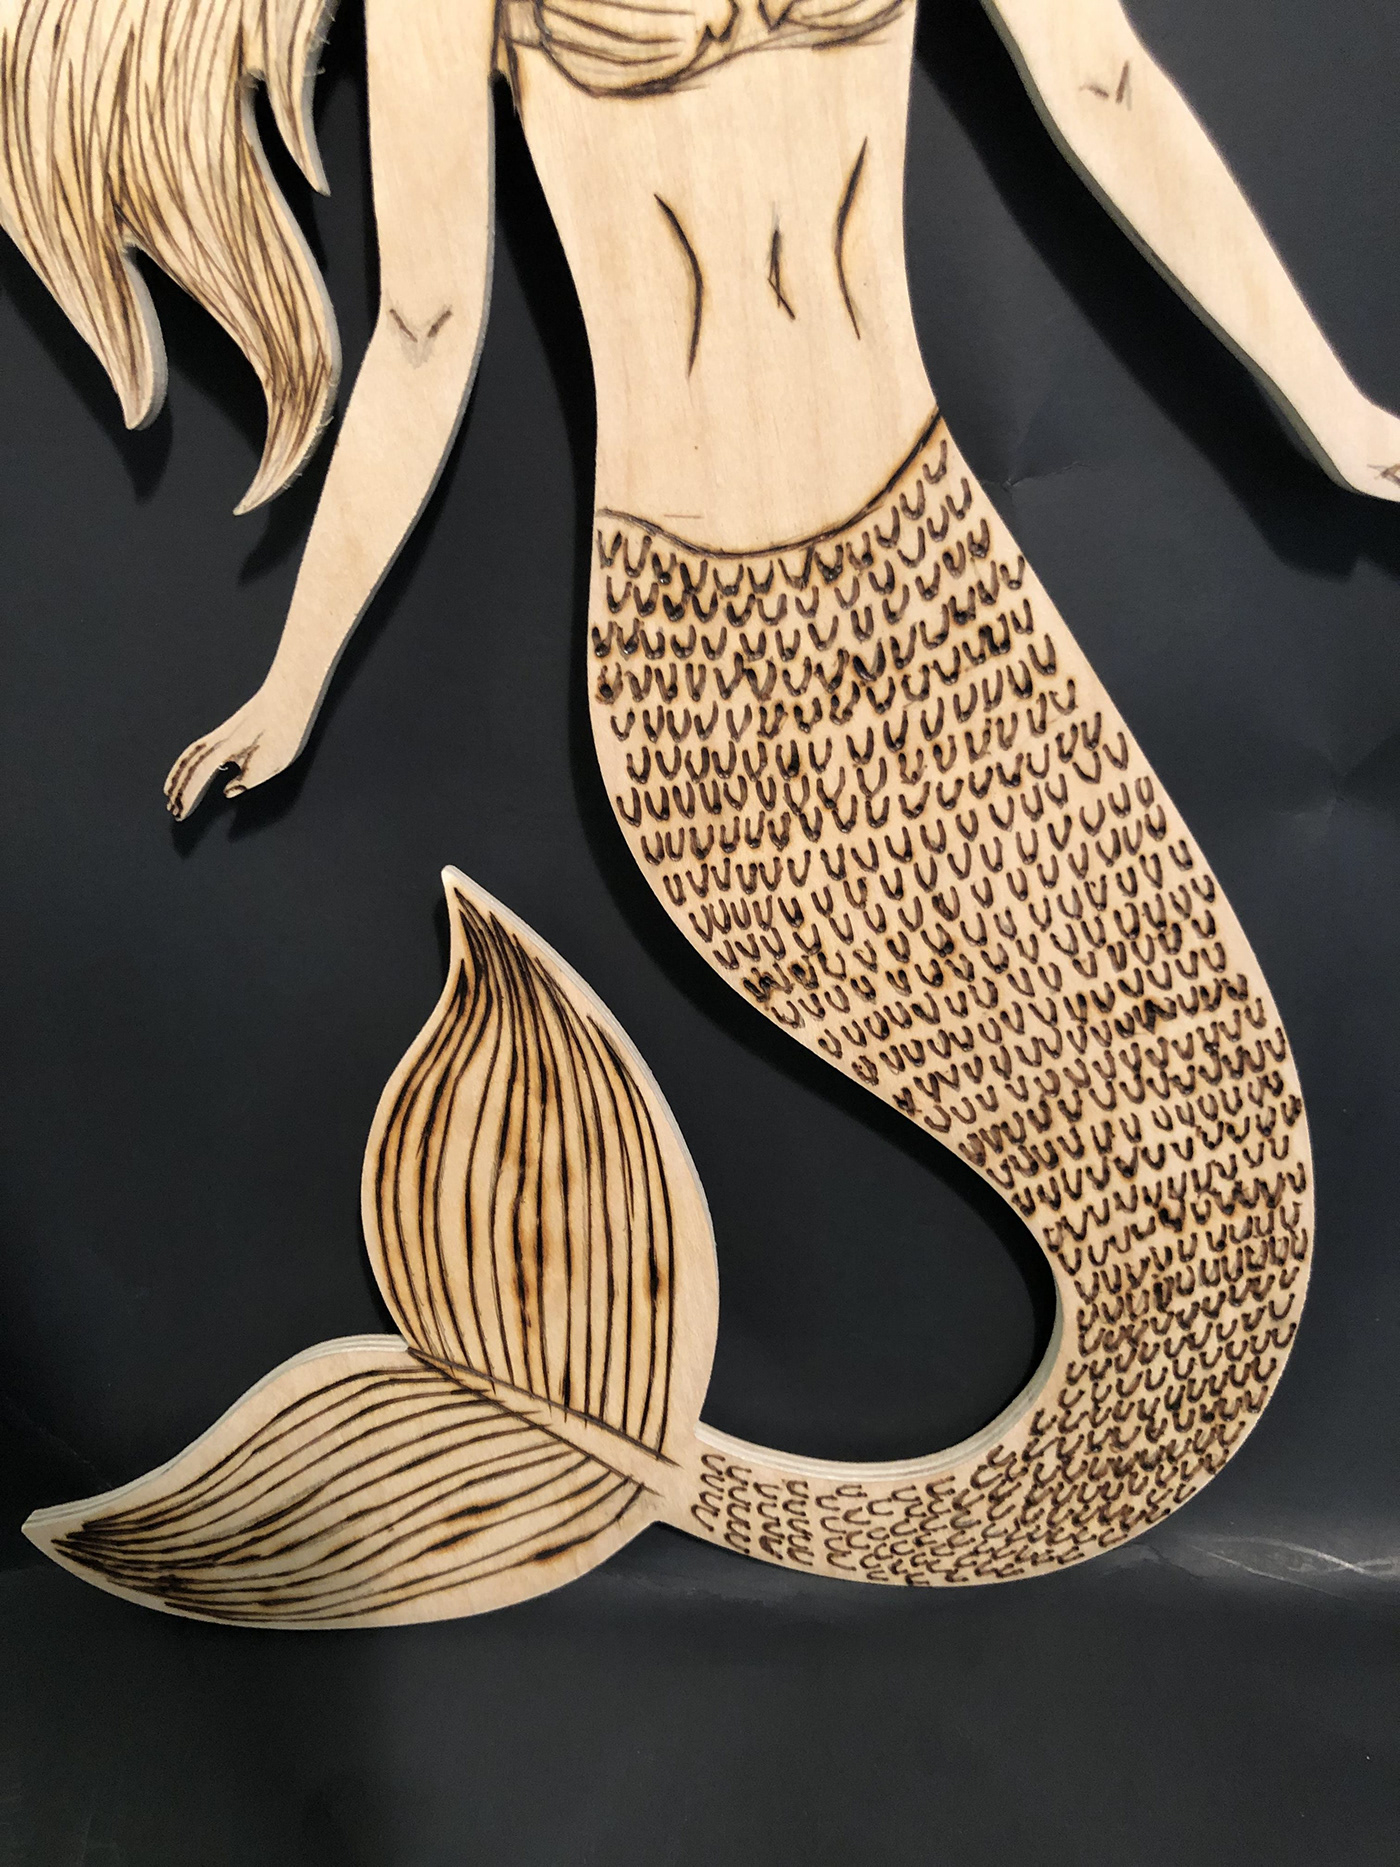 mermaid mermaid tail seashell bra Wood Burning wood burning tool wooden mermaid